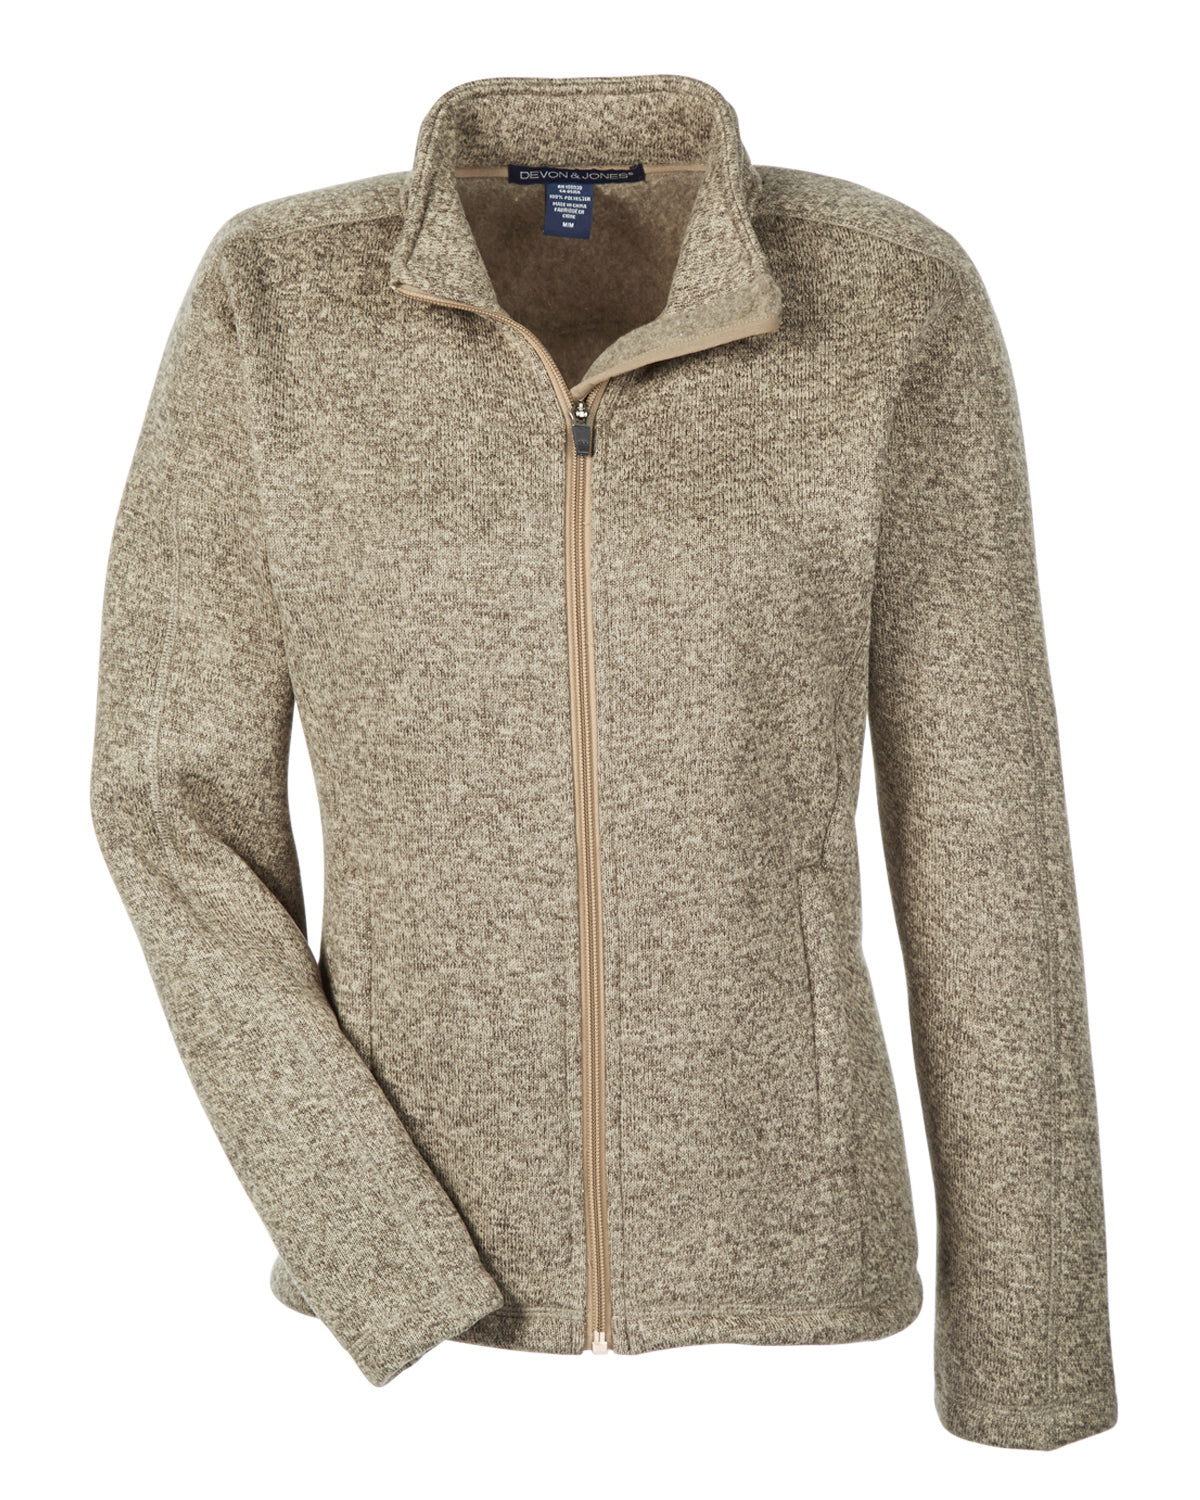 Devon & Jones Ladies' Bristol Full-Zip Sweater Fleece Jacket – Cabot  Business